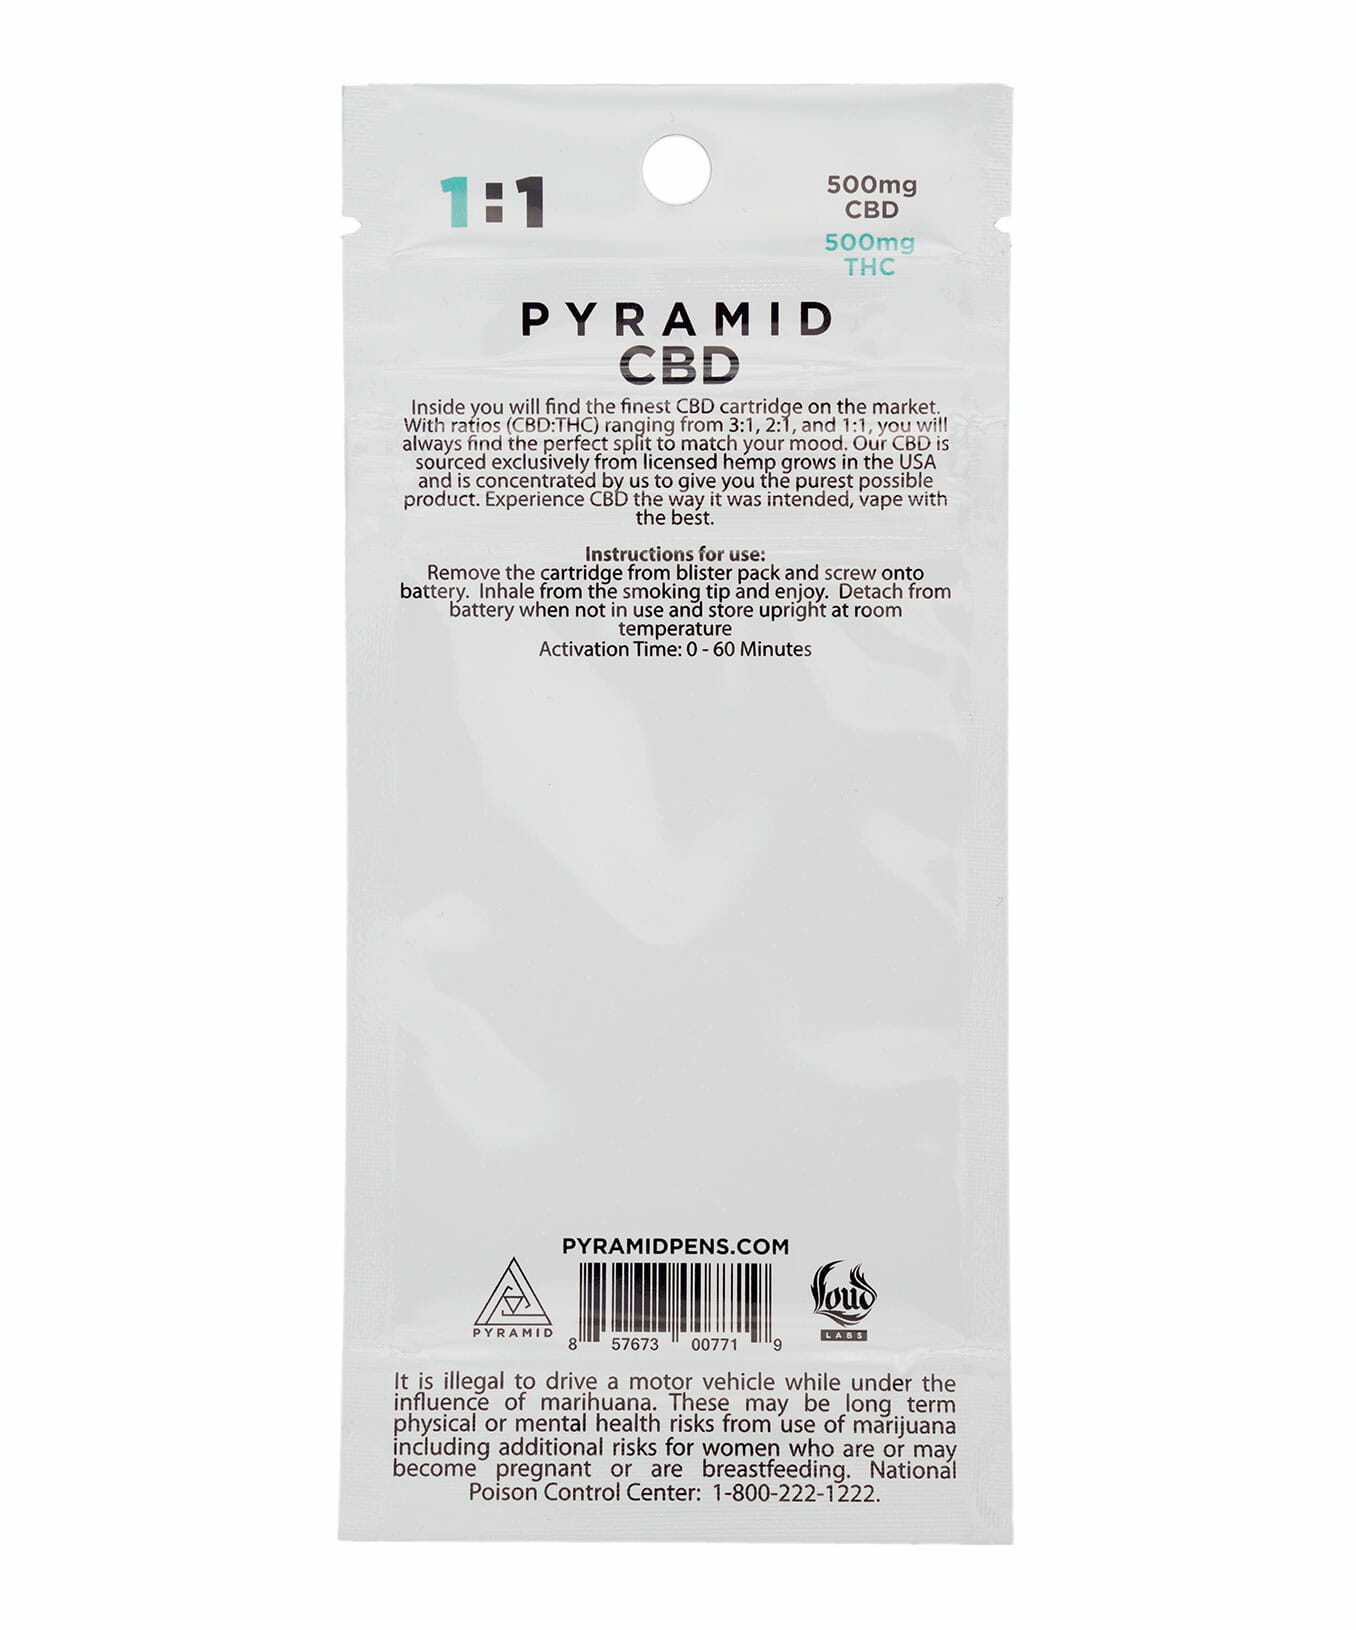 1:1 Pyramid CBD/THC cartridge